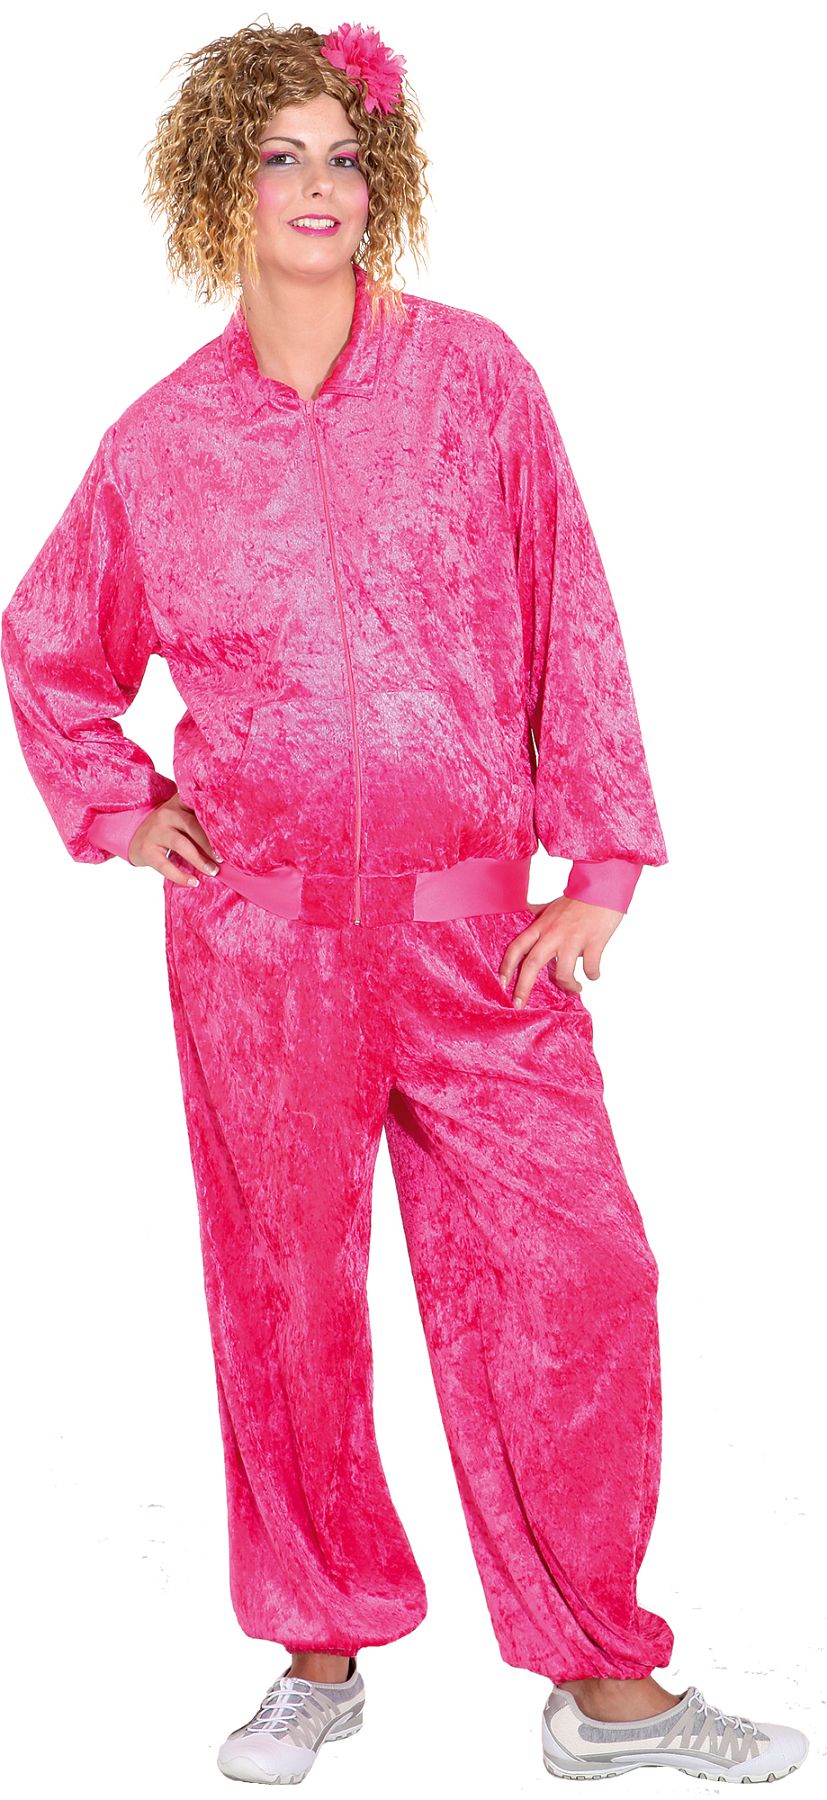 Jogging suit, pink 